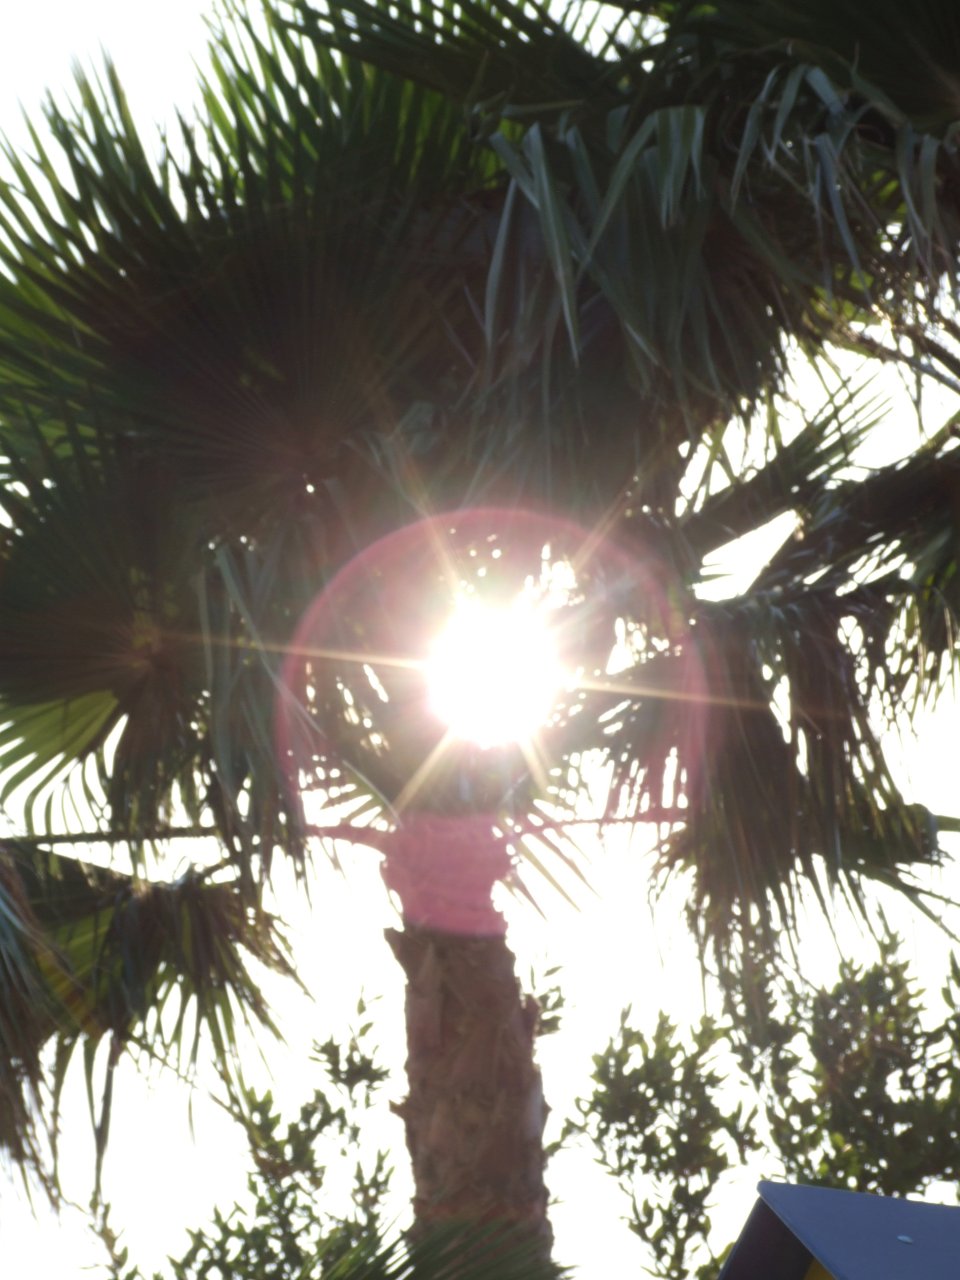 Słońce przebijało się nawet przez gęste liście palmy